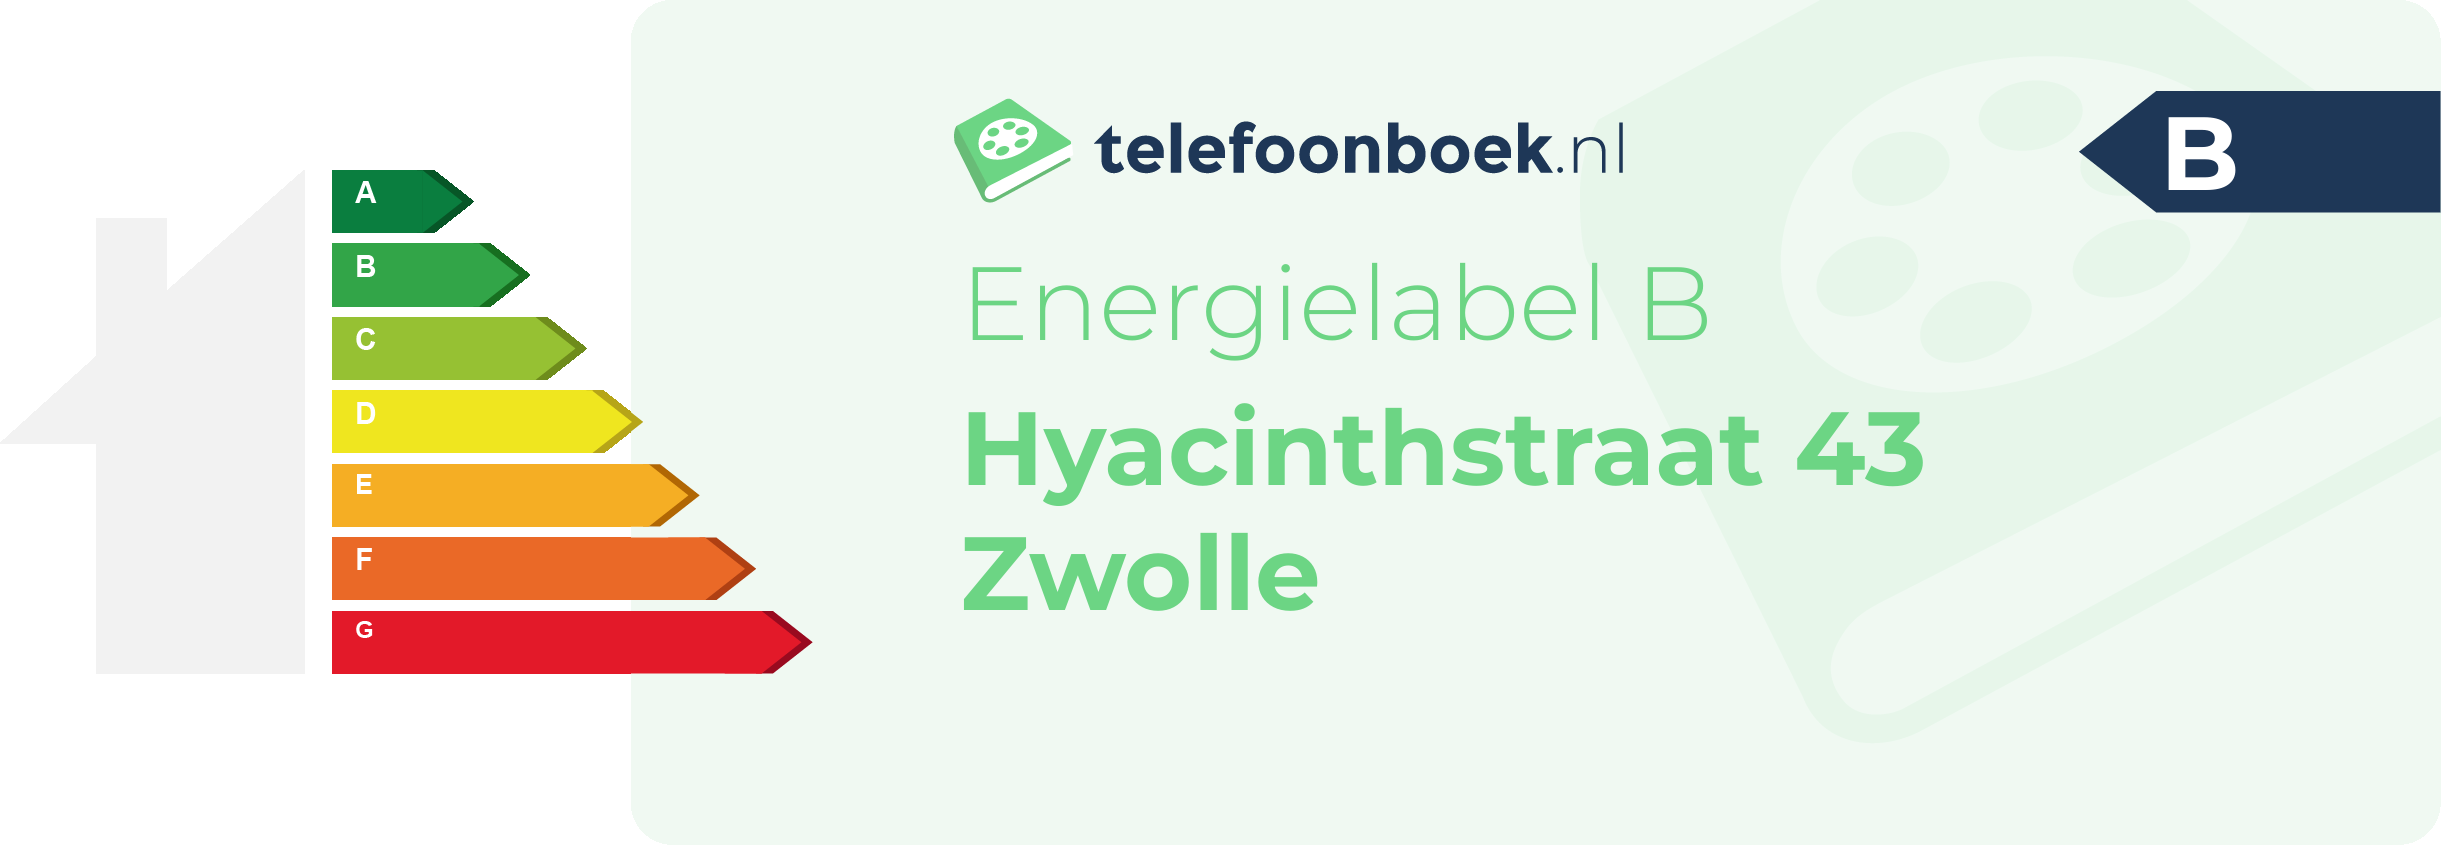 Energielabel Hyacinthstraat 43 Zwolle